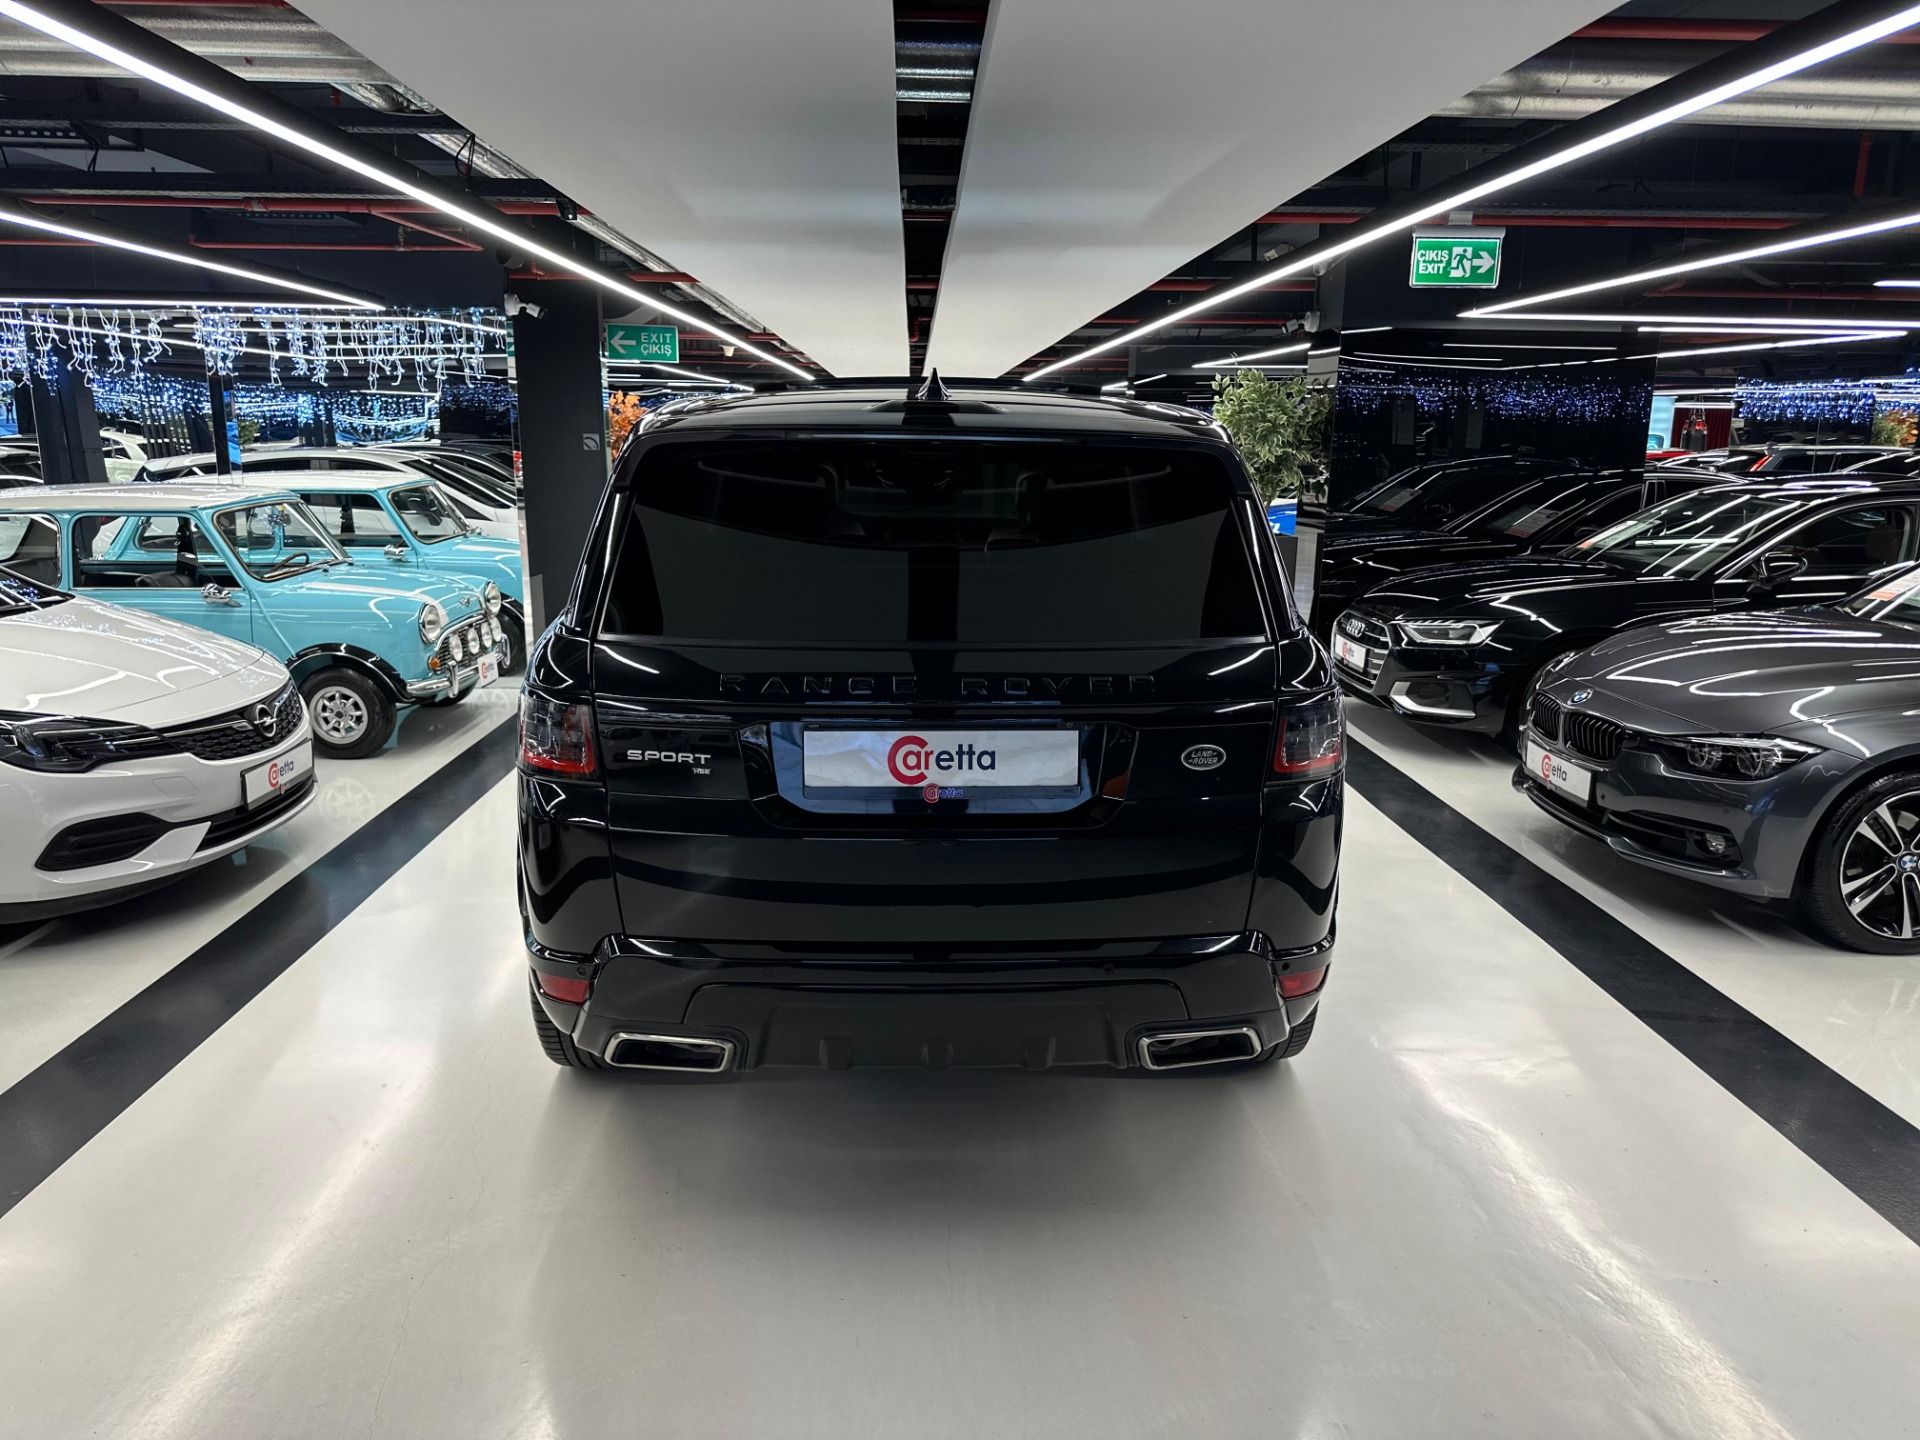 2019 Model Range Rover Sport 2.0 HSE-13